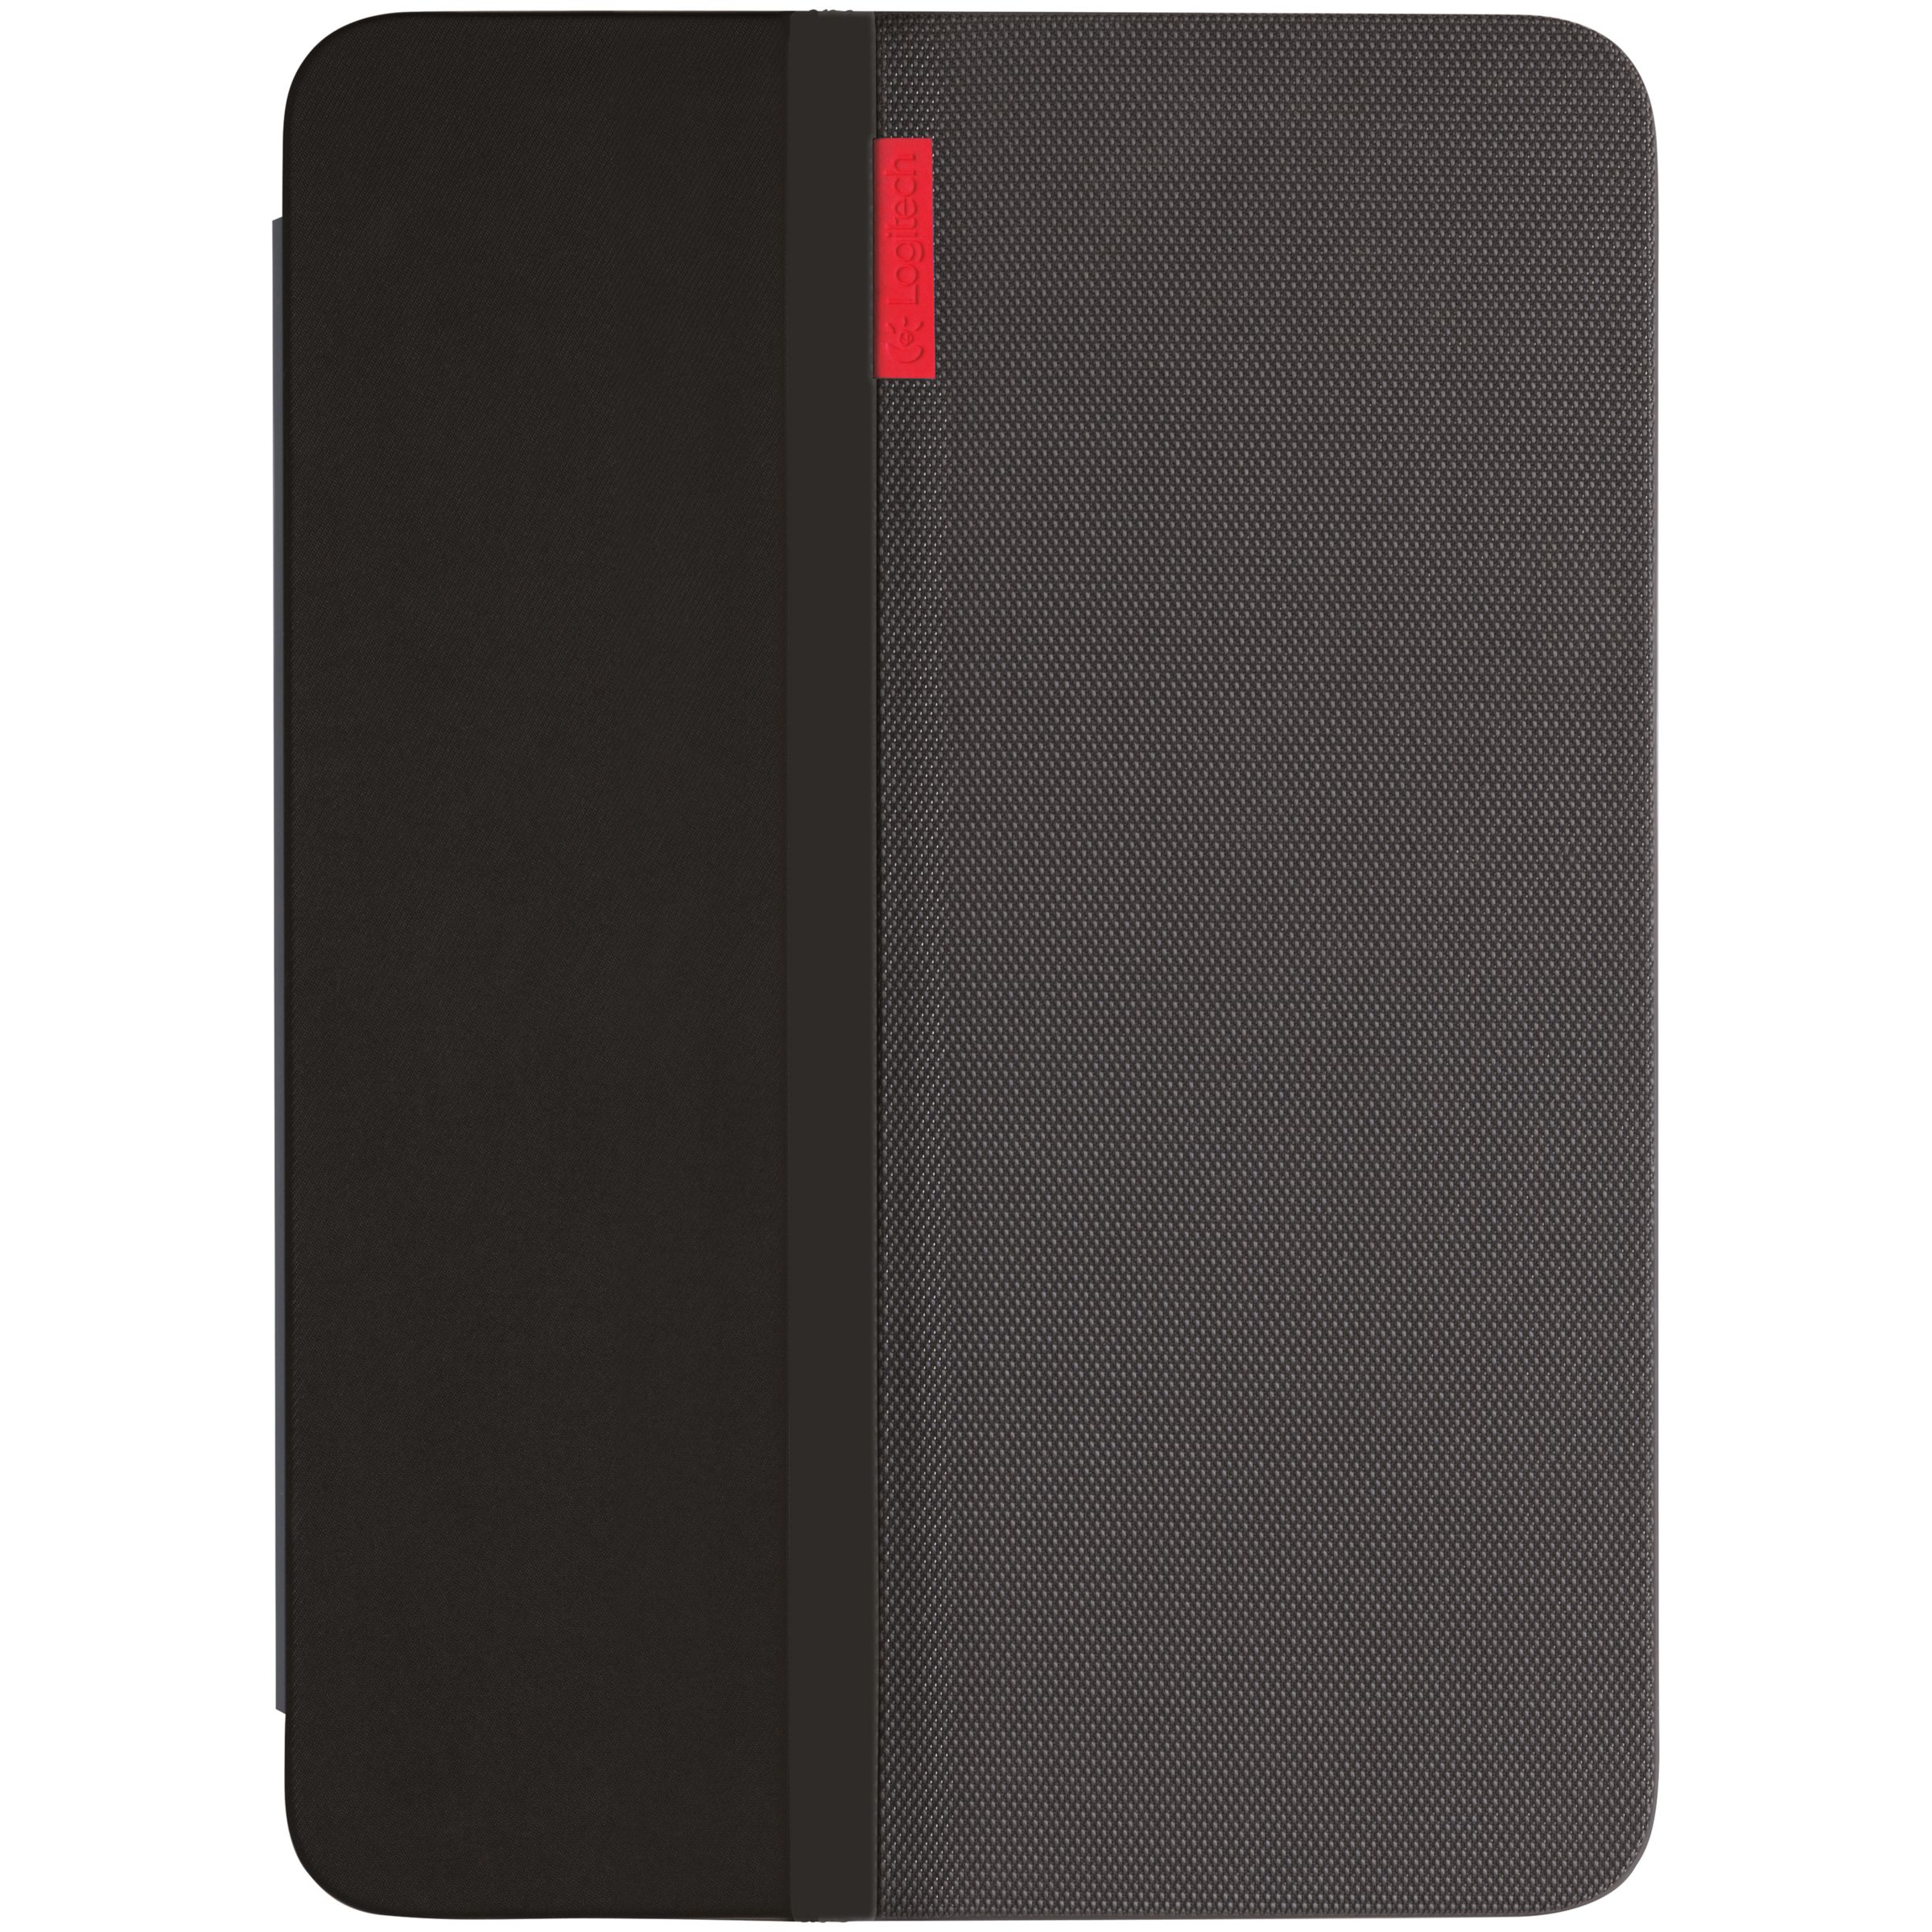 halvkugle strømper Transportere Logitech AnyAngle Case for iPad Air 2, Black